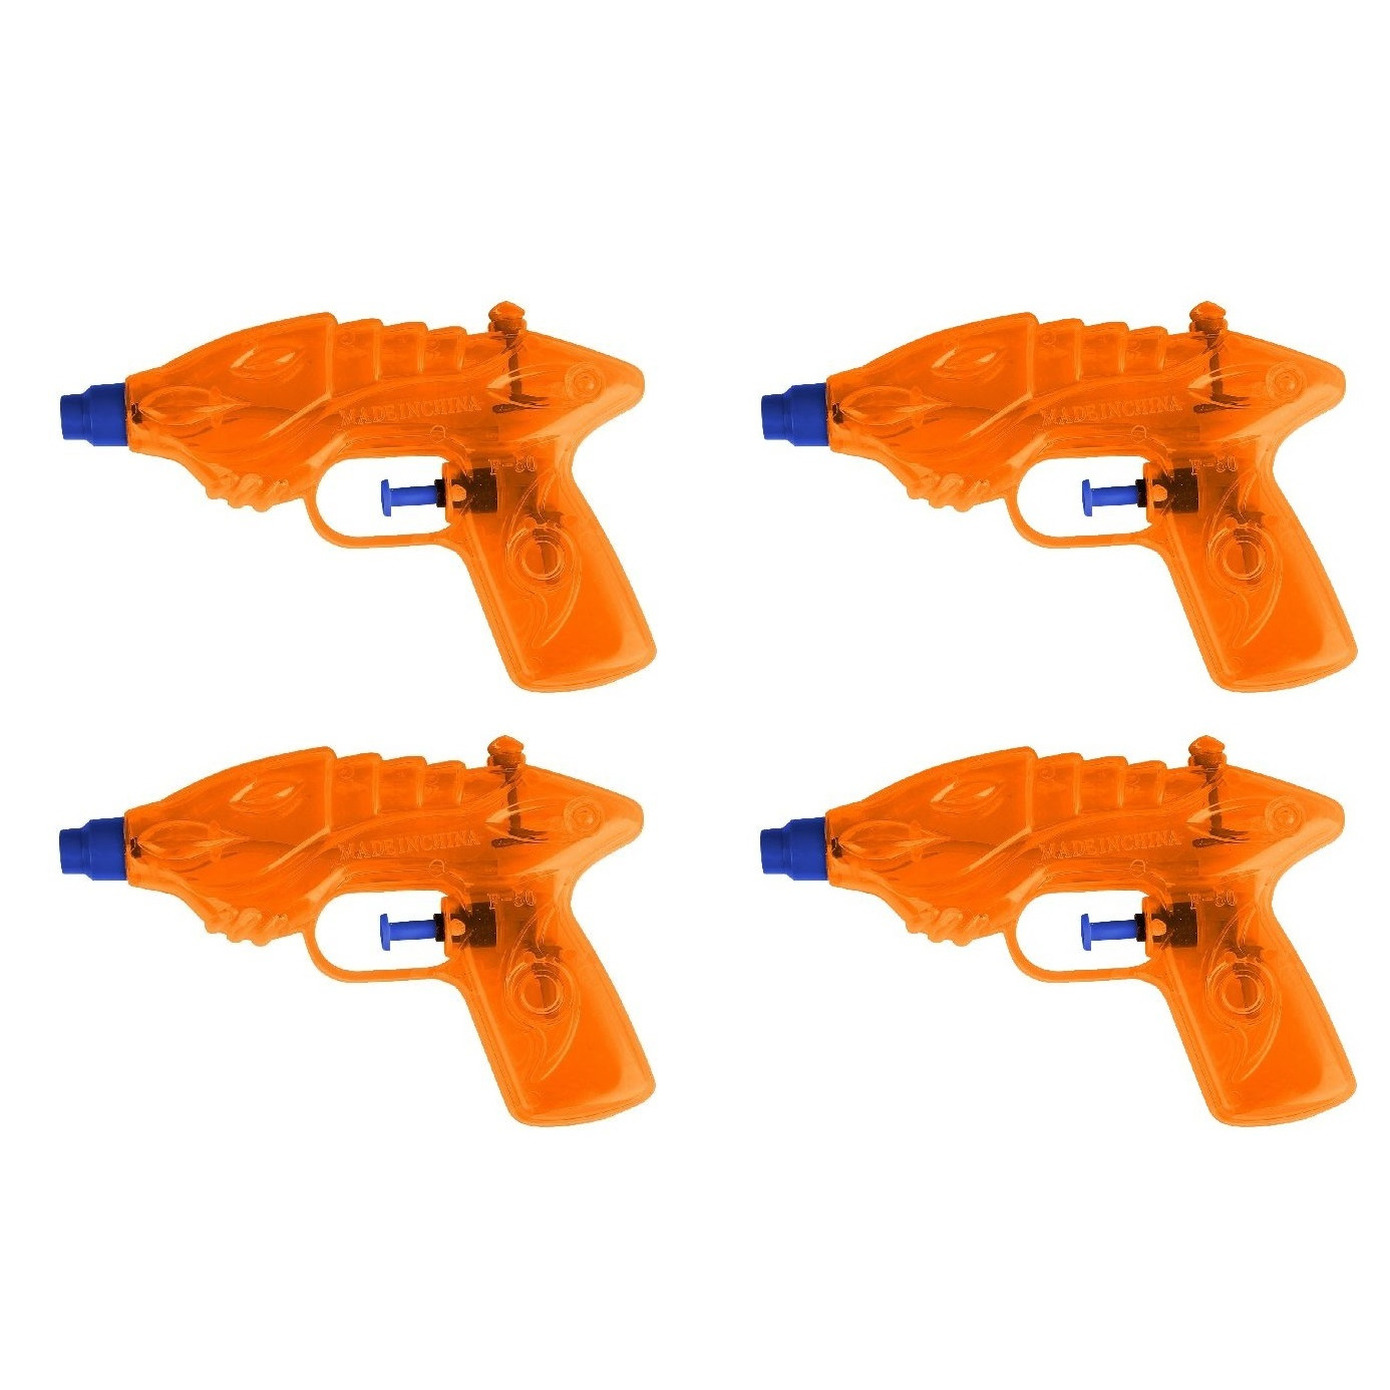 10x Waterpistoolwaterpistolen oranje 16,5 cm Voordeel